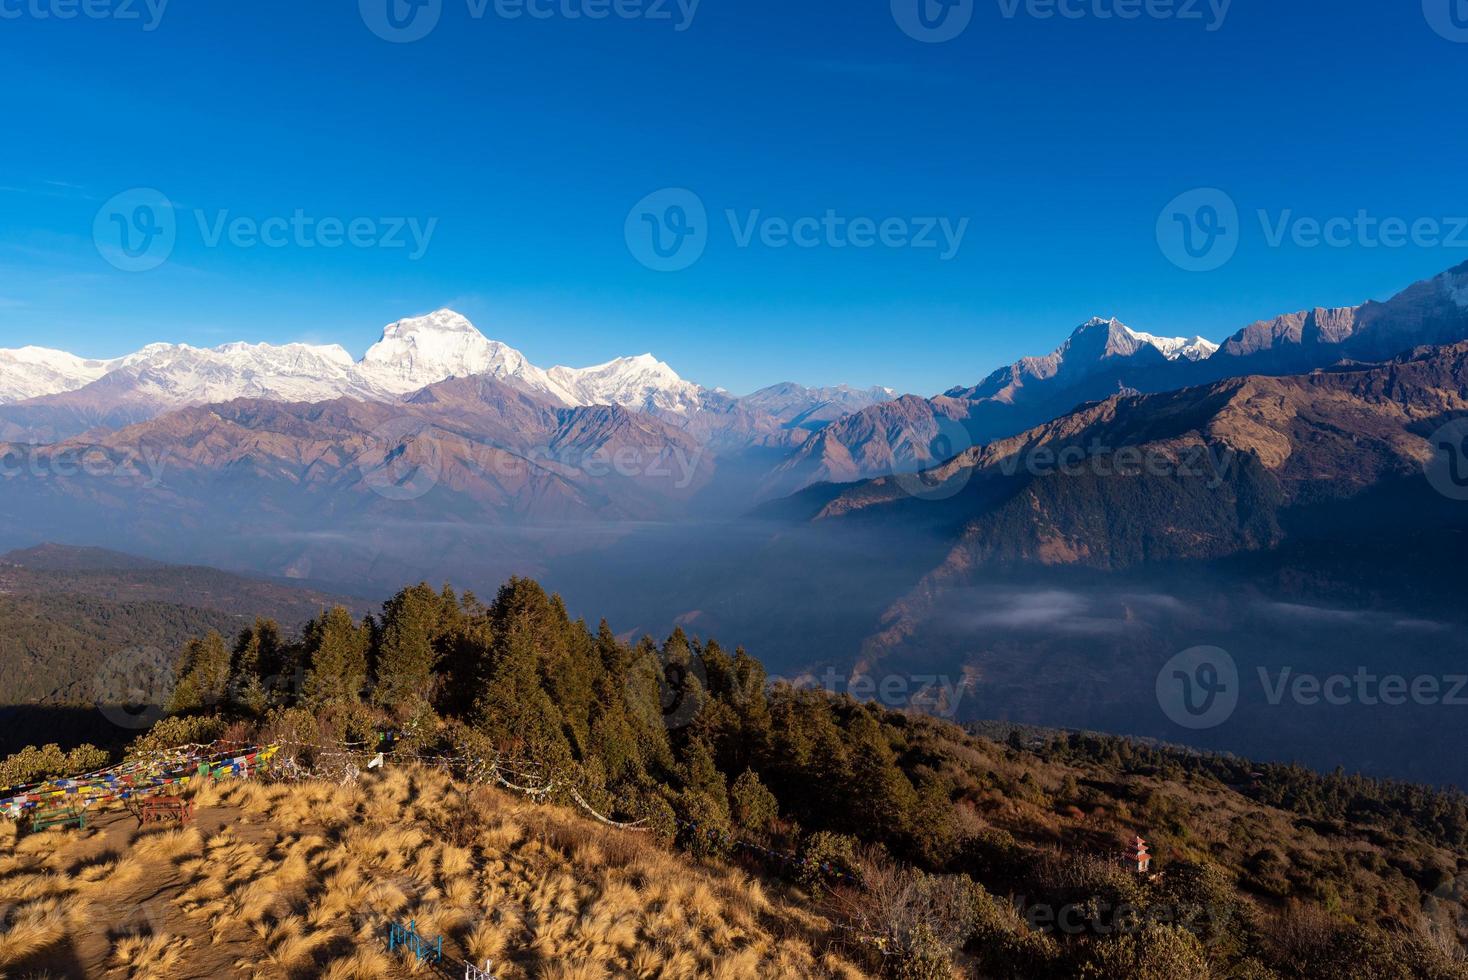 vista da natureza da cordilheira do Himalaia no ponto de vista de poon hill, nepal. Poon Hill é o ponto de vista famoso na vila de Gorepani para ver o belo nascer do sol sobre a cordilheira de Annapurna no Nepal foto